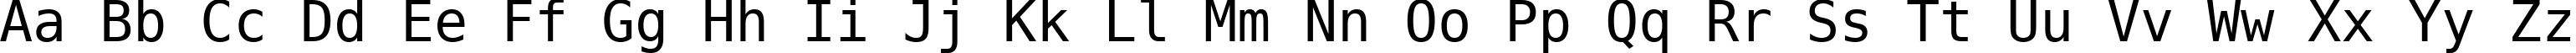 Пример написания английского алфавита шрифтом DejaVu Sans Mono